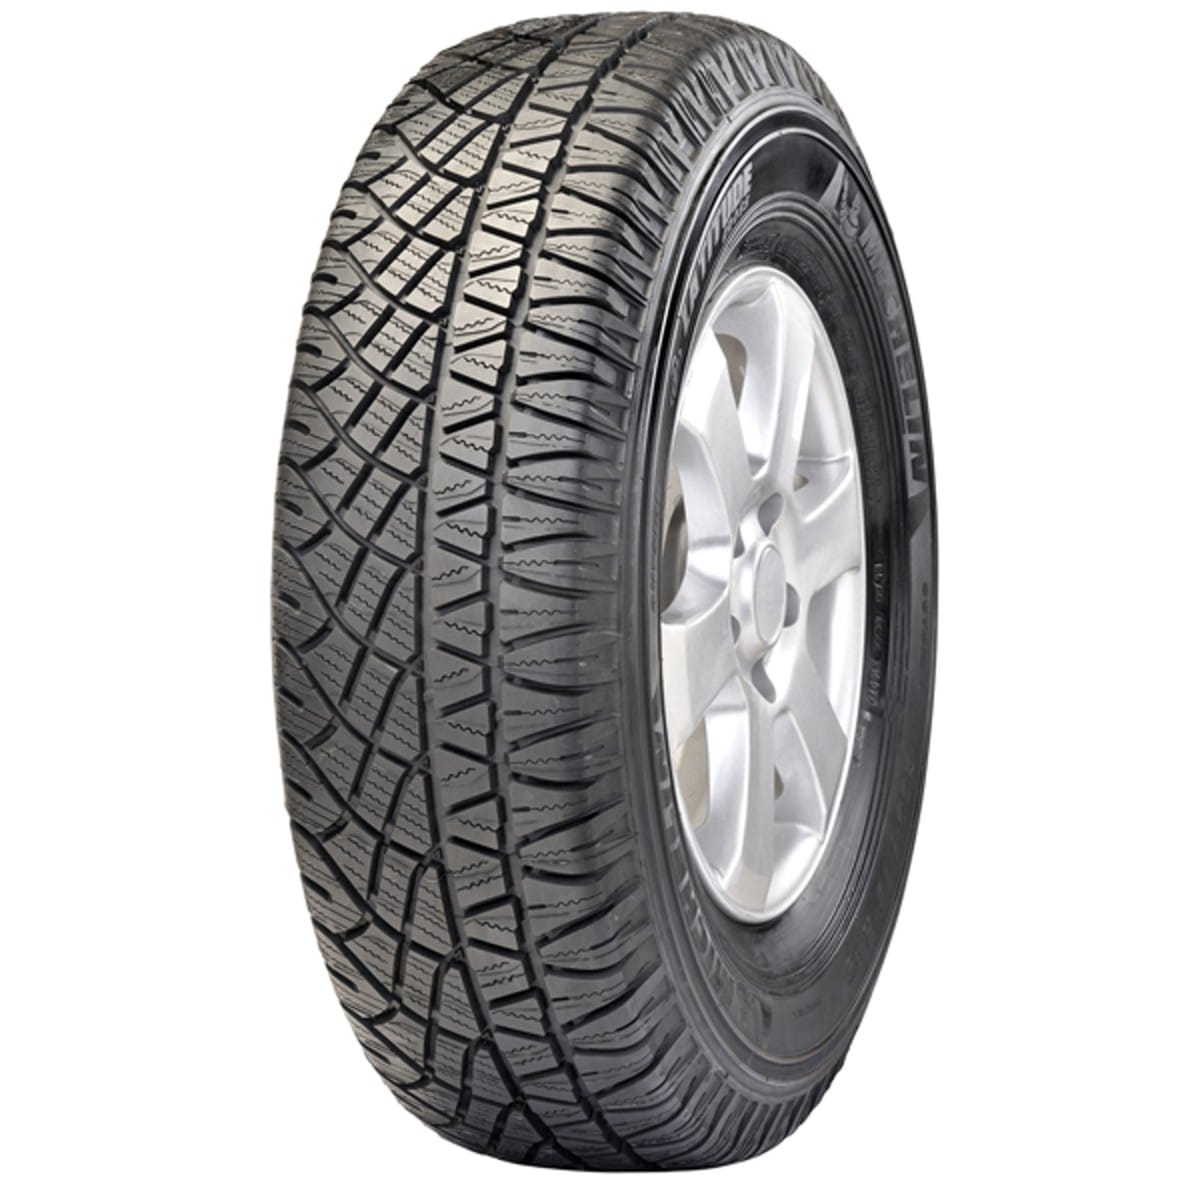 Gomme Nuove Michelin 235/65 R17 108V Latitudecross XL pneumatici nuovi Estivo